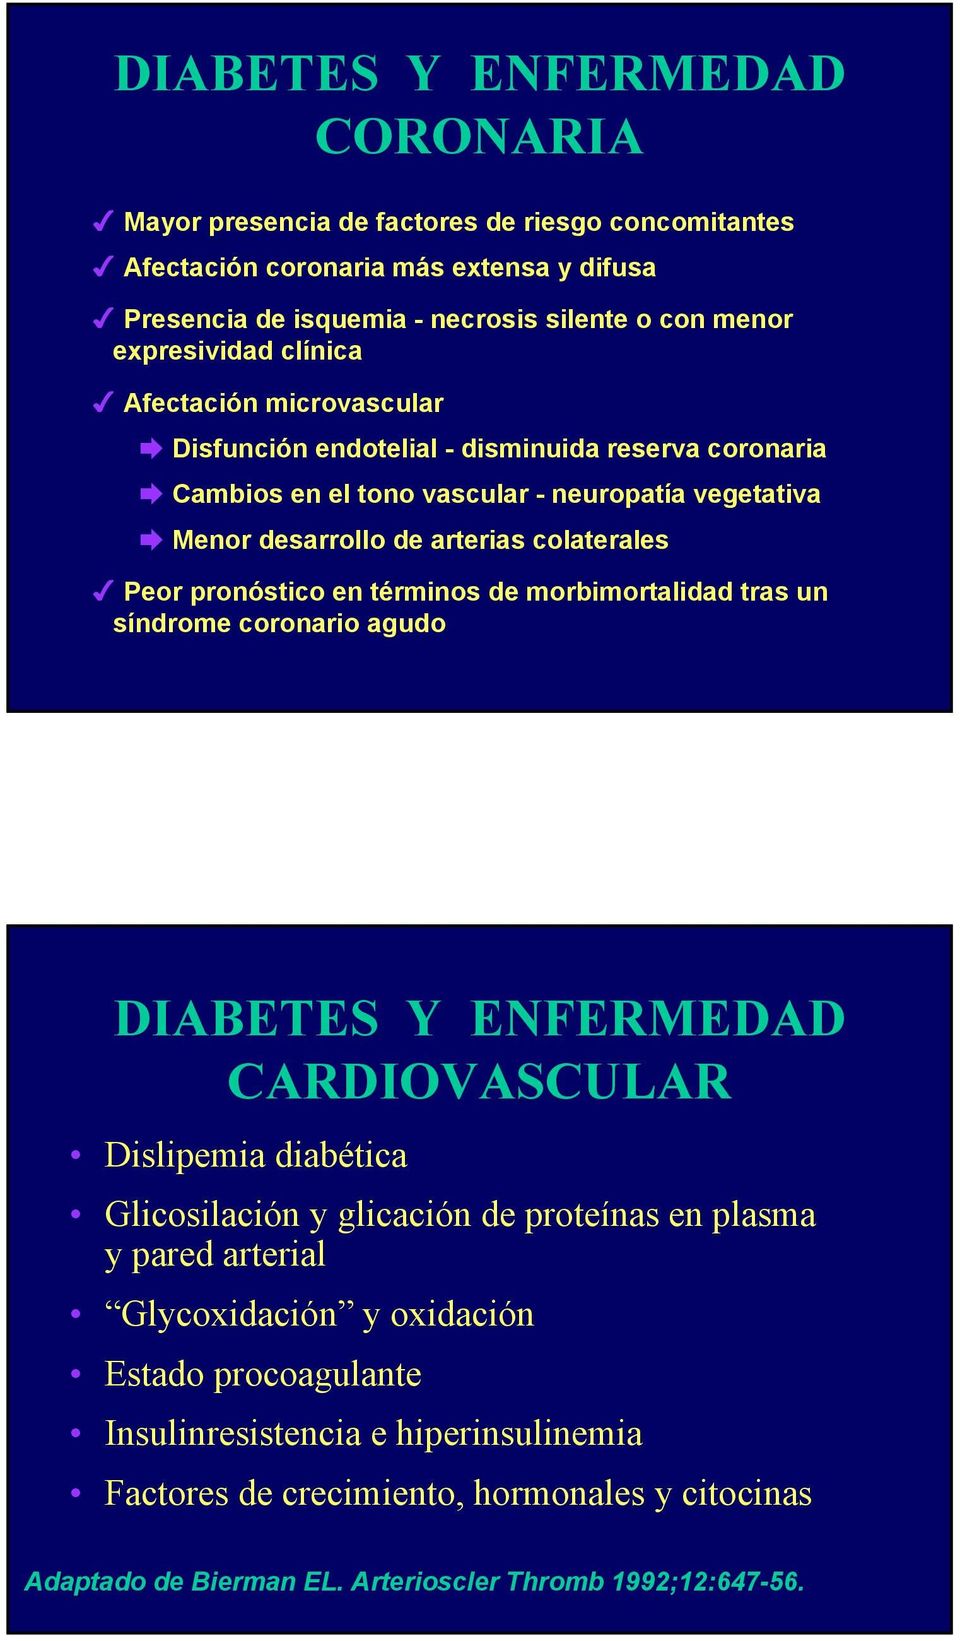 pronóstico en términos de morbimortalidad tras un síndrome coronario agudo DIABETES Y ENFERMEDAD CARDIOVASCULAR Dislipemia diabética Glicosilación y glicación de proteínas en plasma y pared